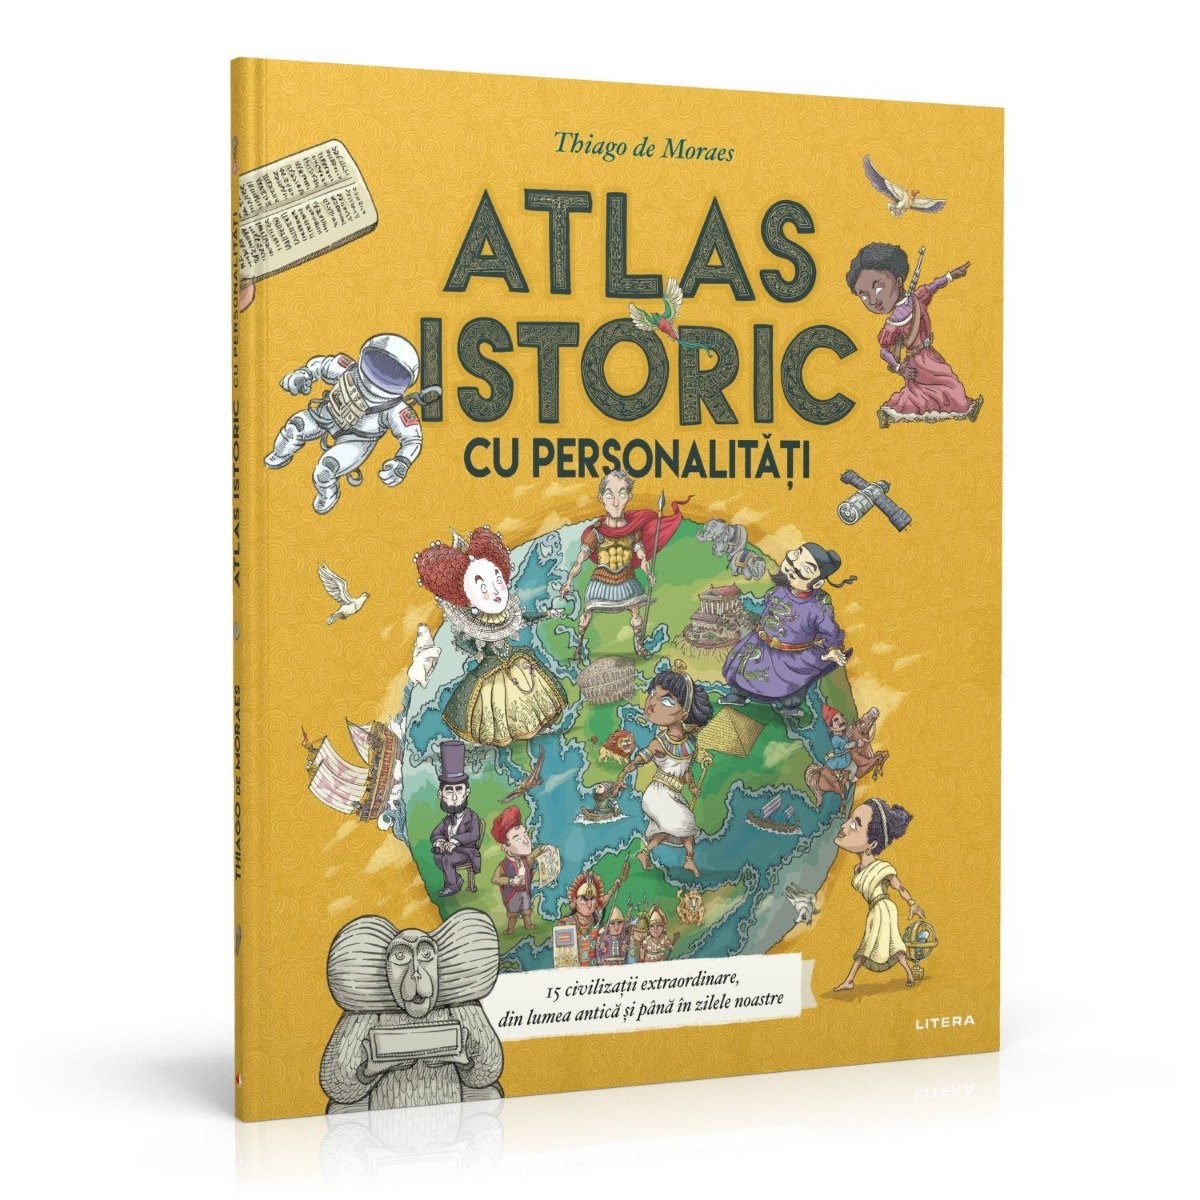 Atlas istoric cu personalitati, Thiago de Moraes